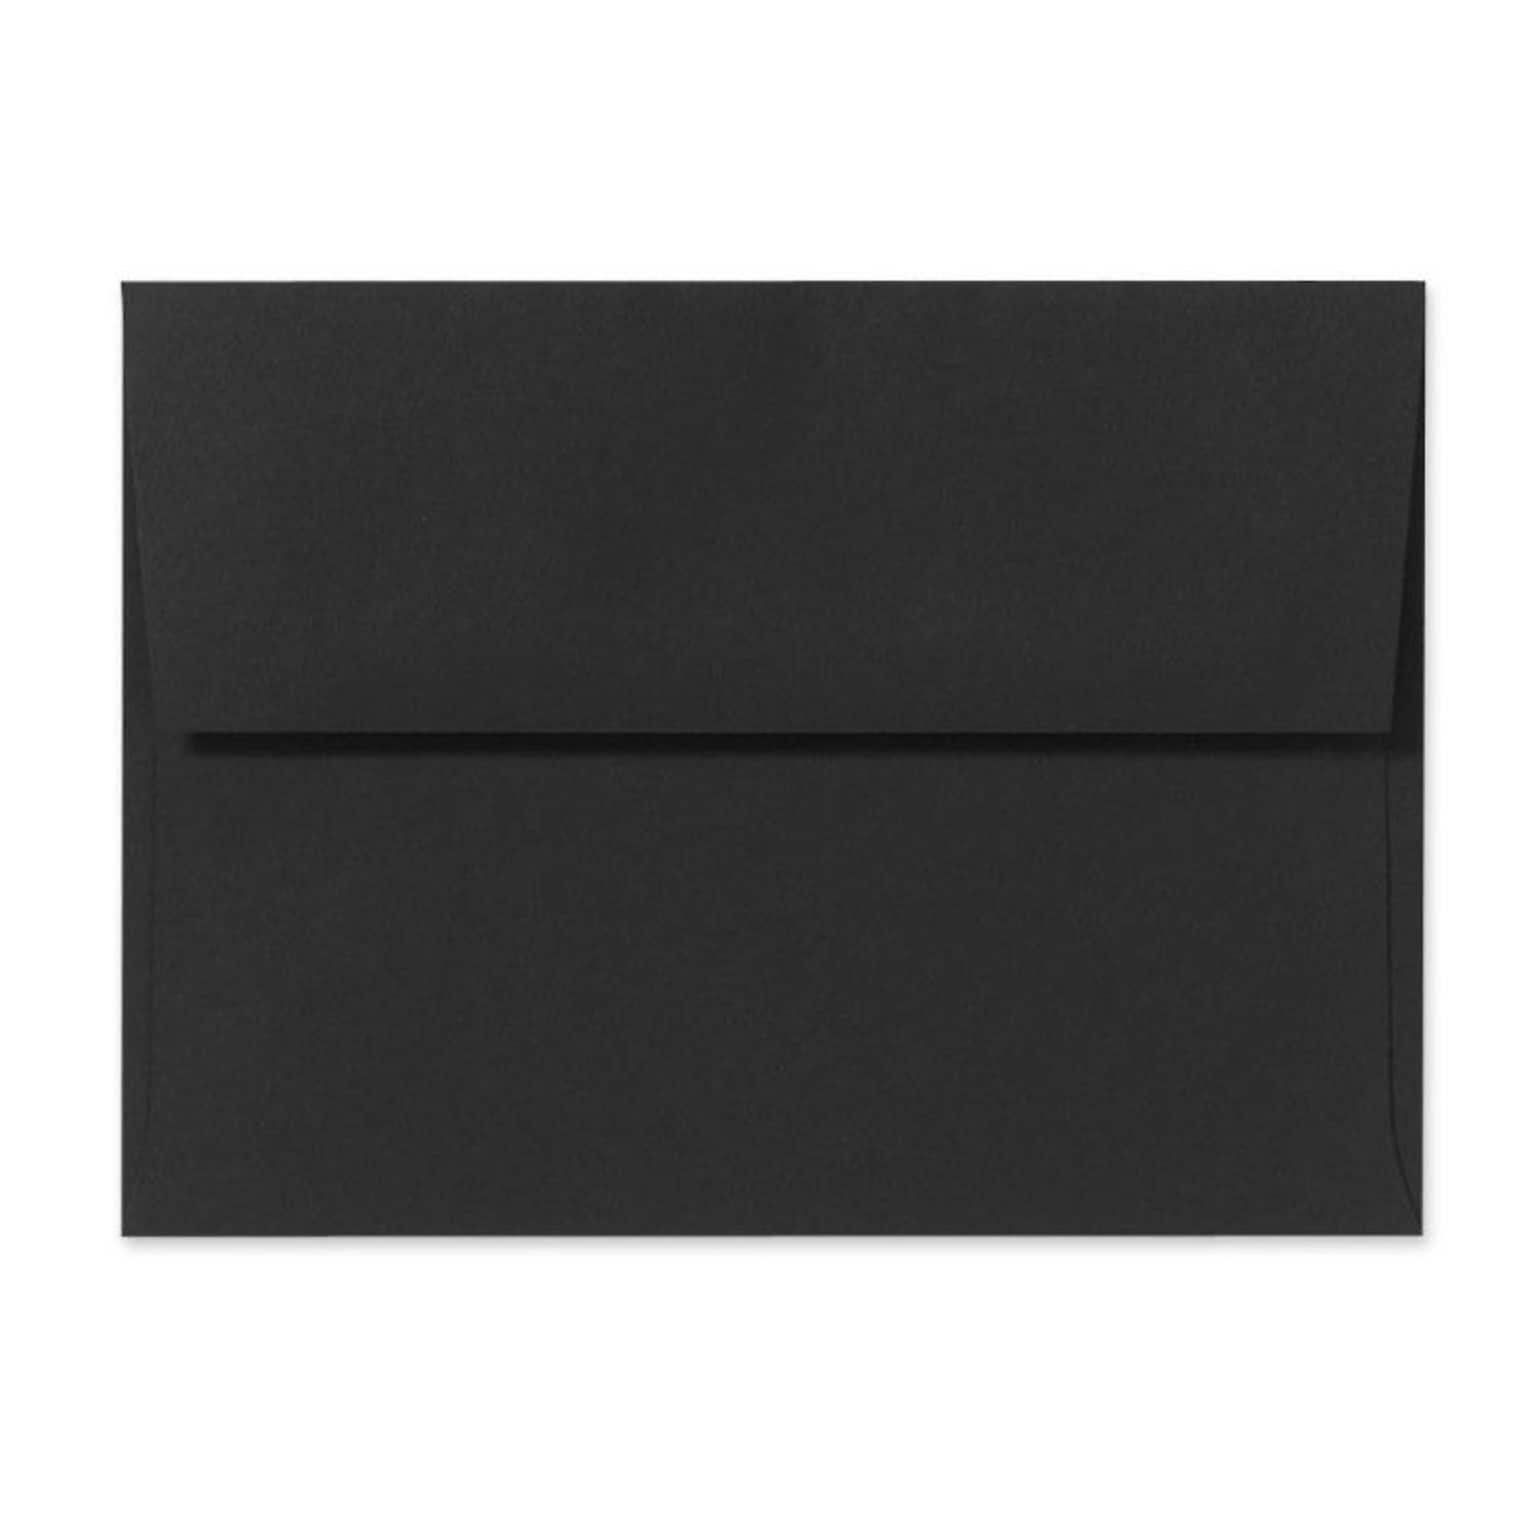 LUX A2 (4 3/8 x 5 3/4) 250/Box, Midnight Black (F-4570-B-250)